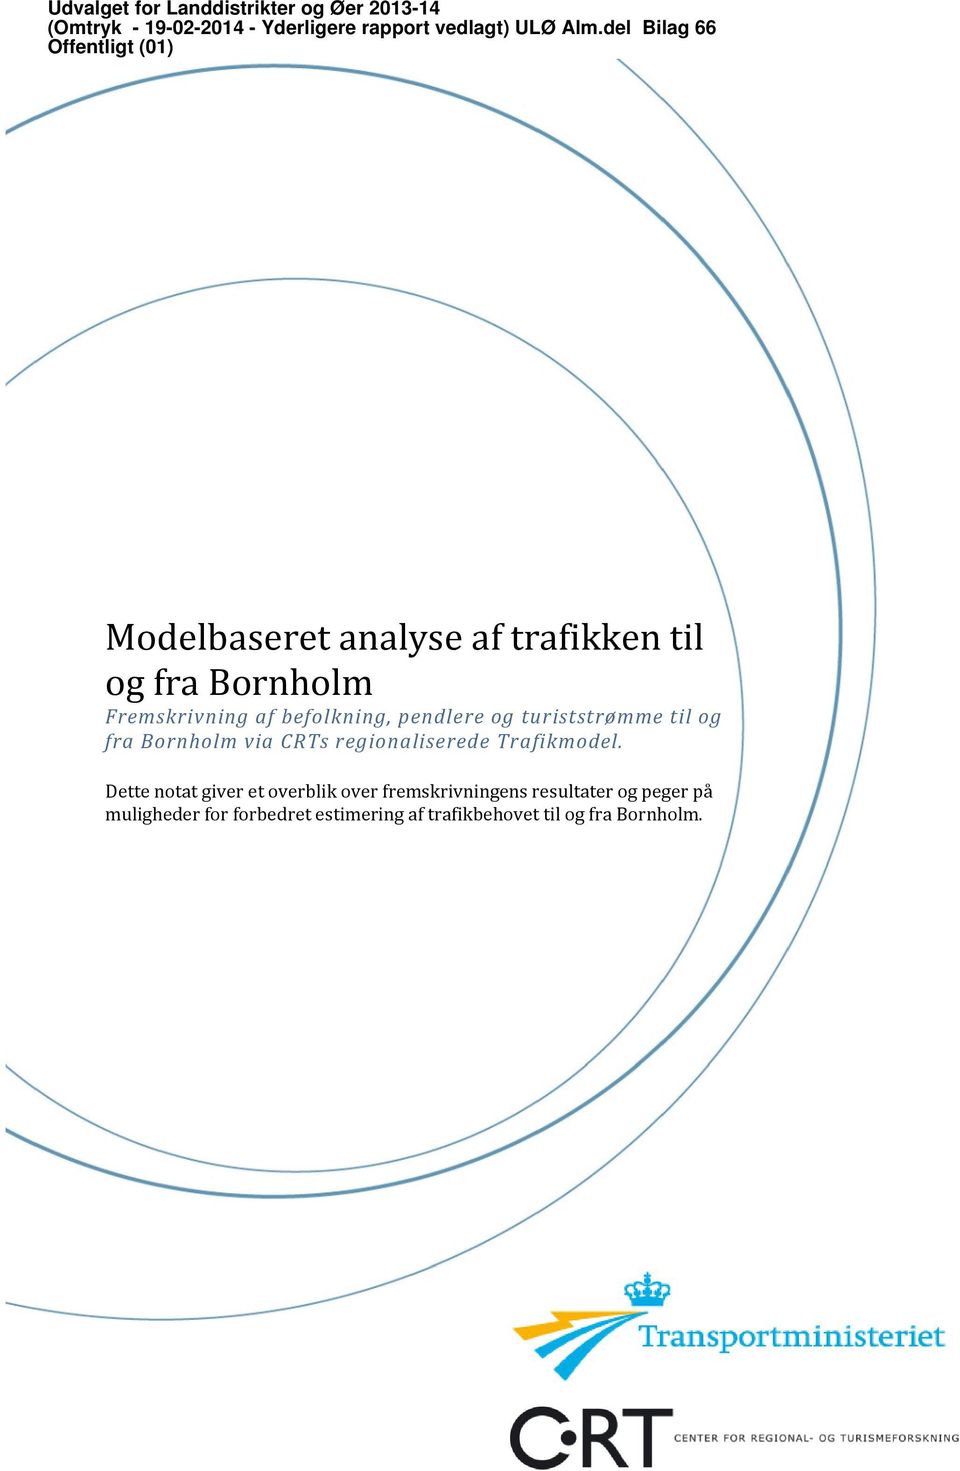 pendlere og turiststrømme til og fra Bornholm via CRTs regionaliserede Trafikmodel.